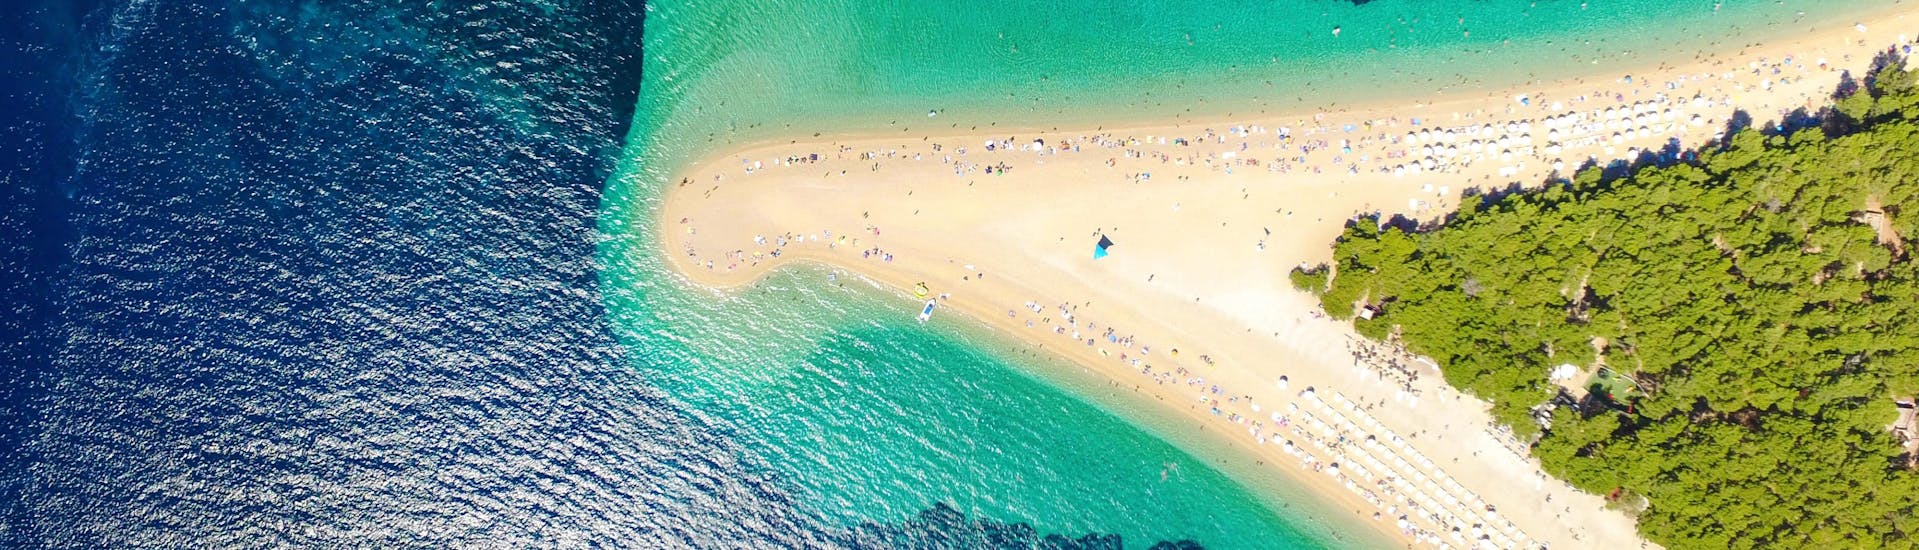 Une vue aérienne de la plage de Bol sur l'île de Brač, une destination populaire pour ceux qui veulent faire des activités nautiques en Croatie.